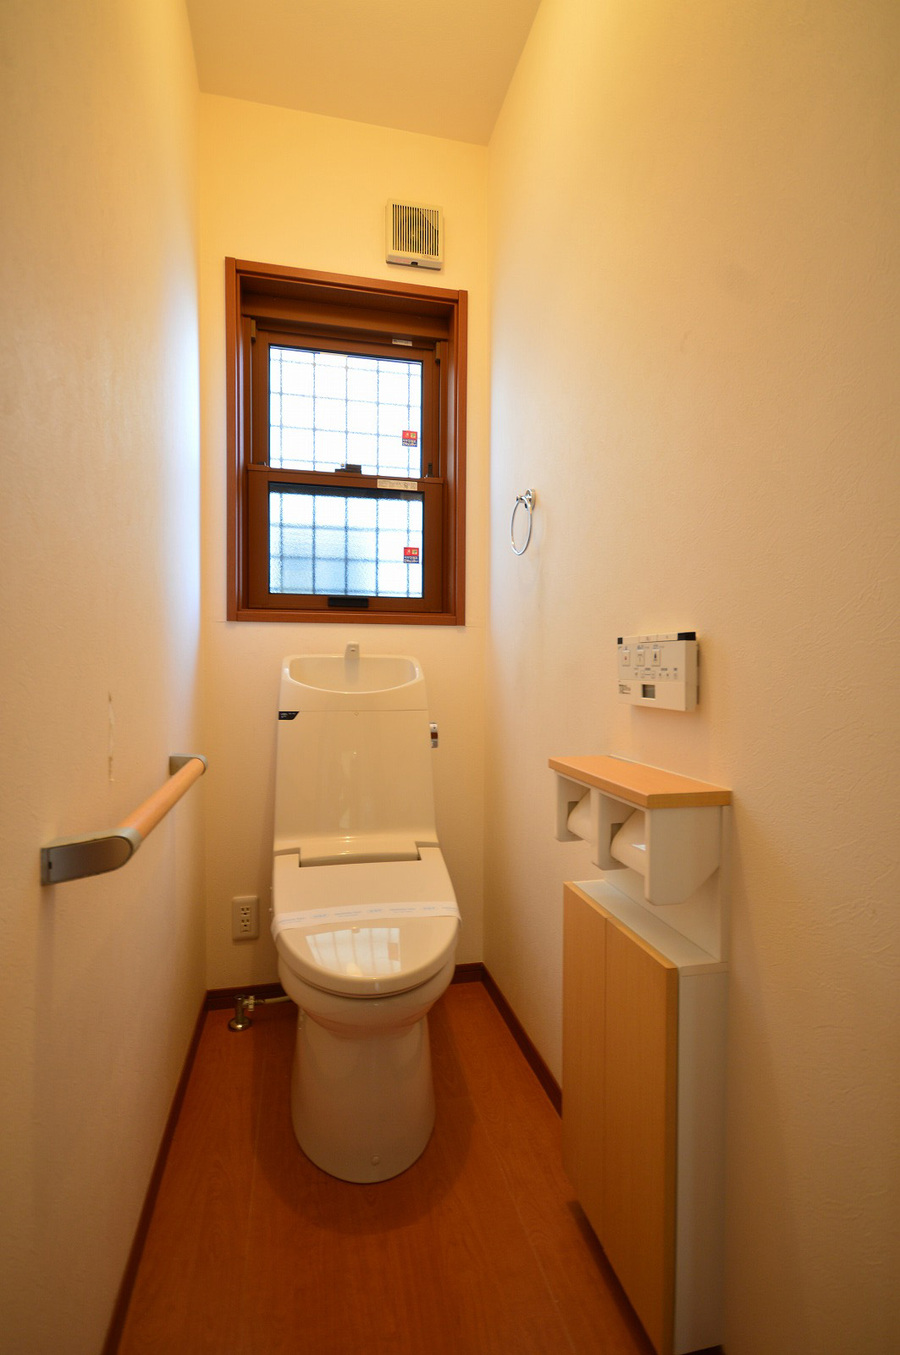 1Fトイレ　トイレットペーパーなどを収納出来るスペースもあります。